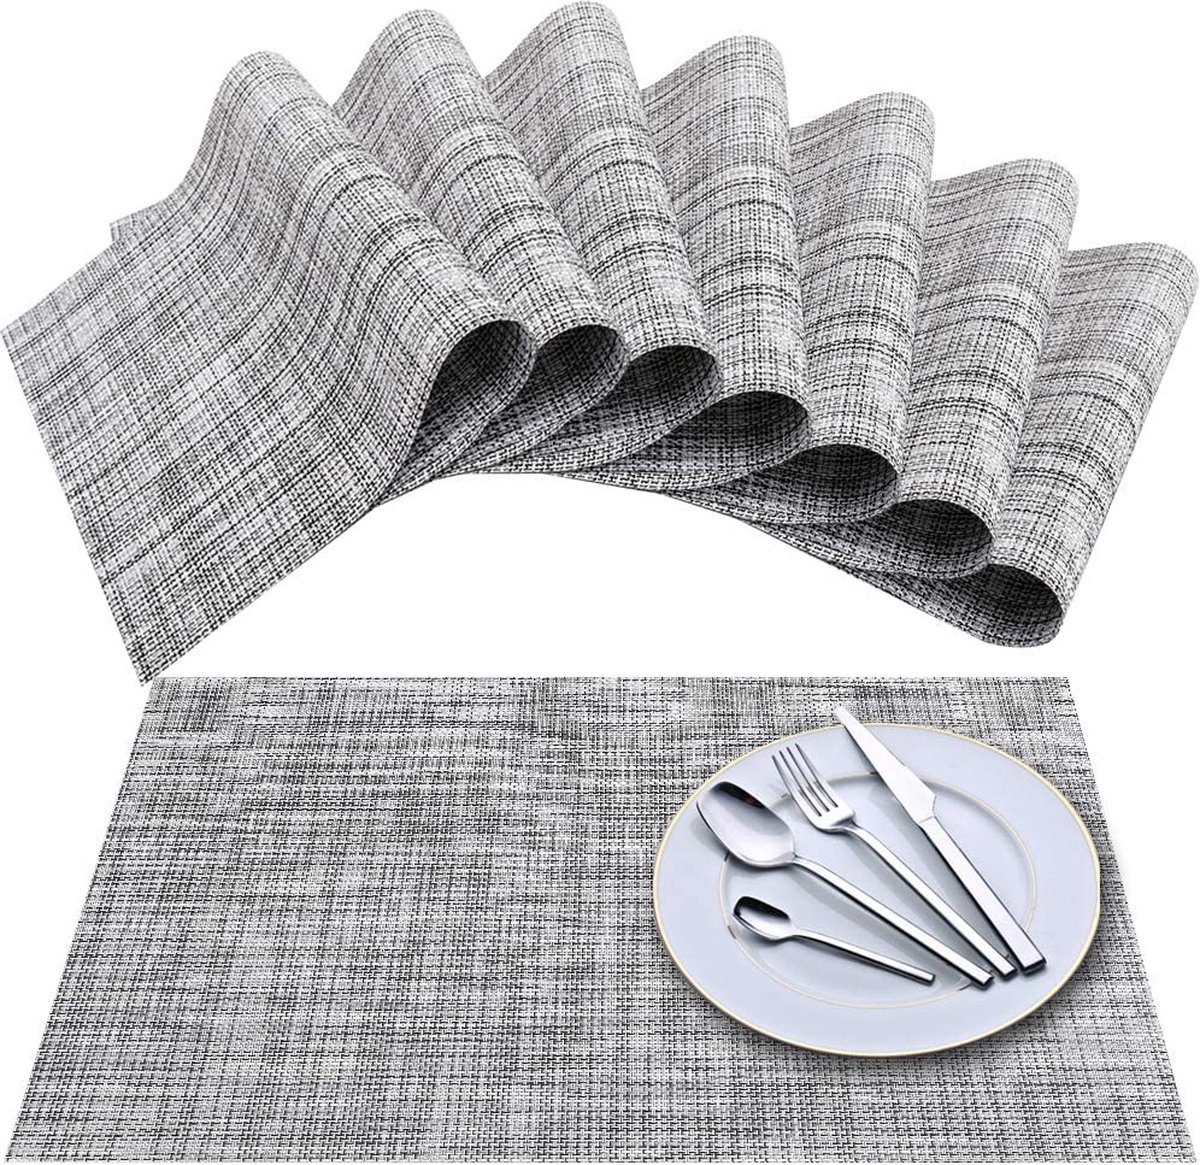 Placemat, Crossweave vinyl geweven placemats, antislip isolatie wasbare placemats set (set van 8 wit grijs)